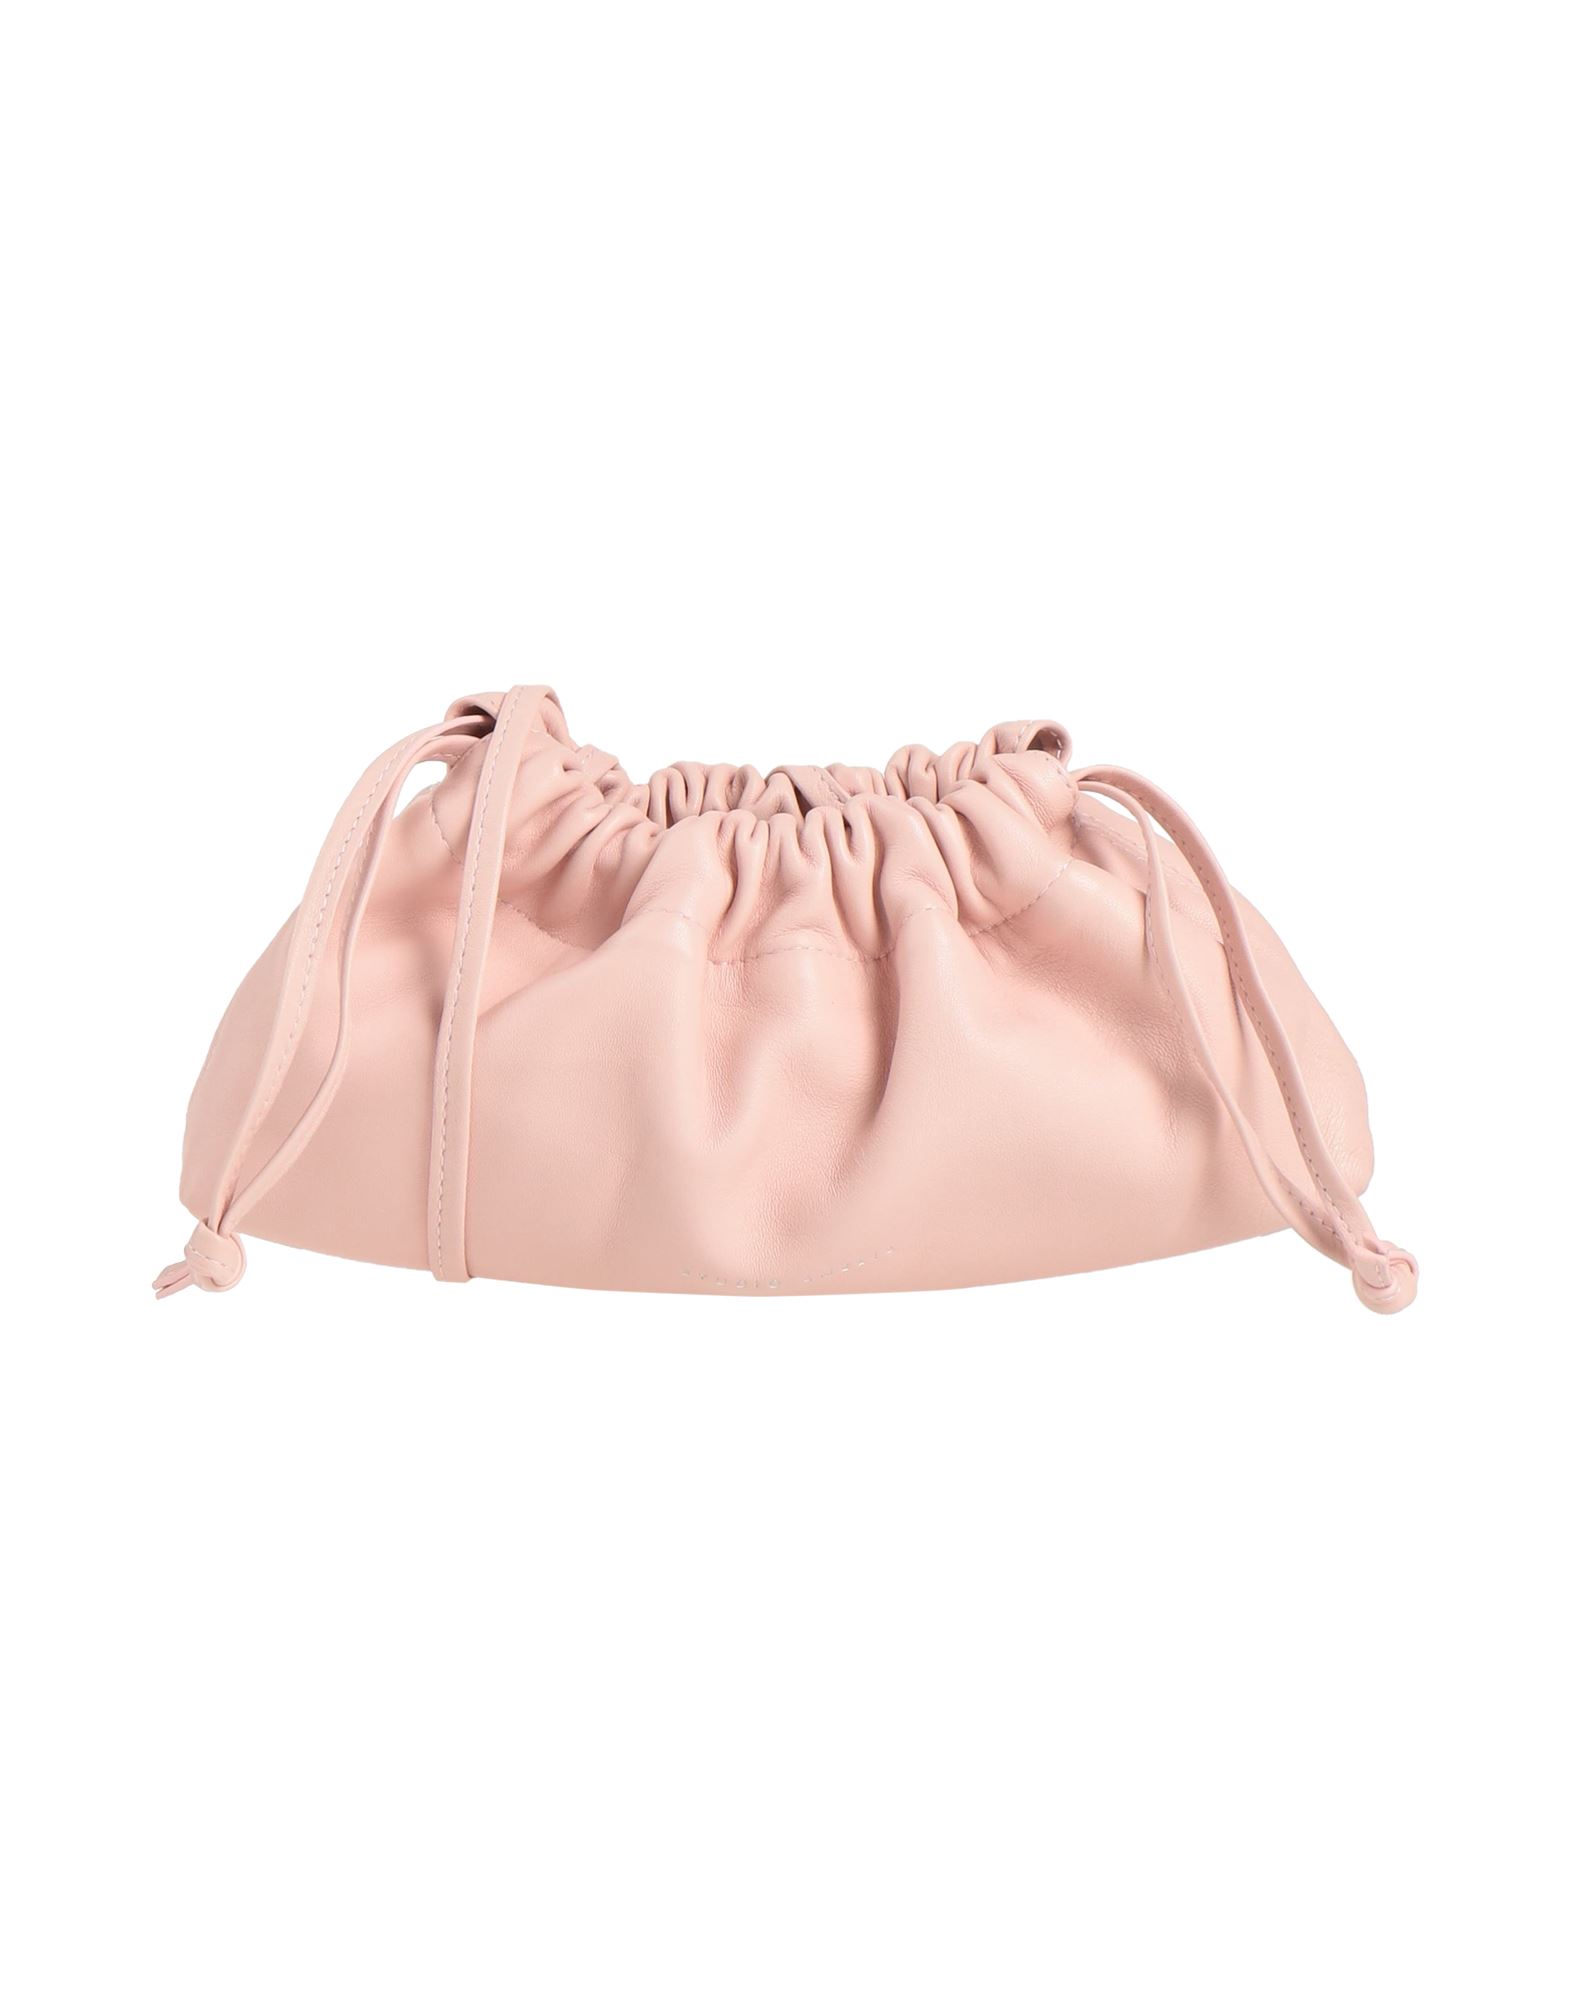 Studio Amelia Handbags In Pink